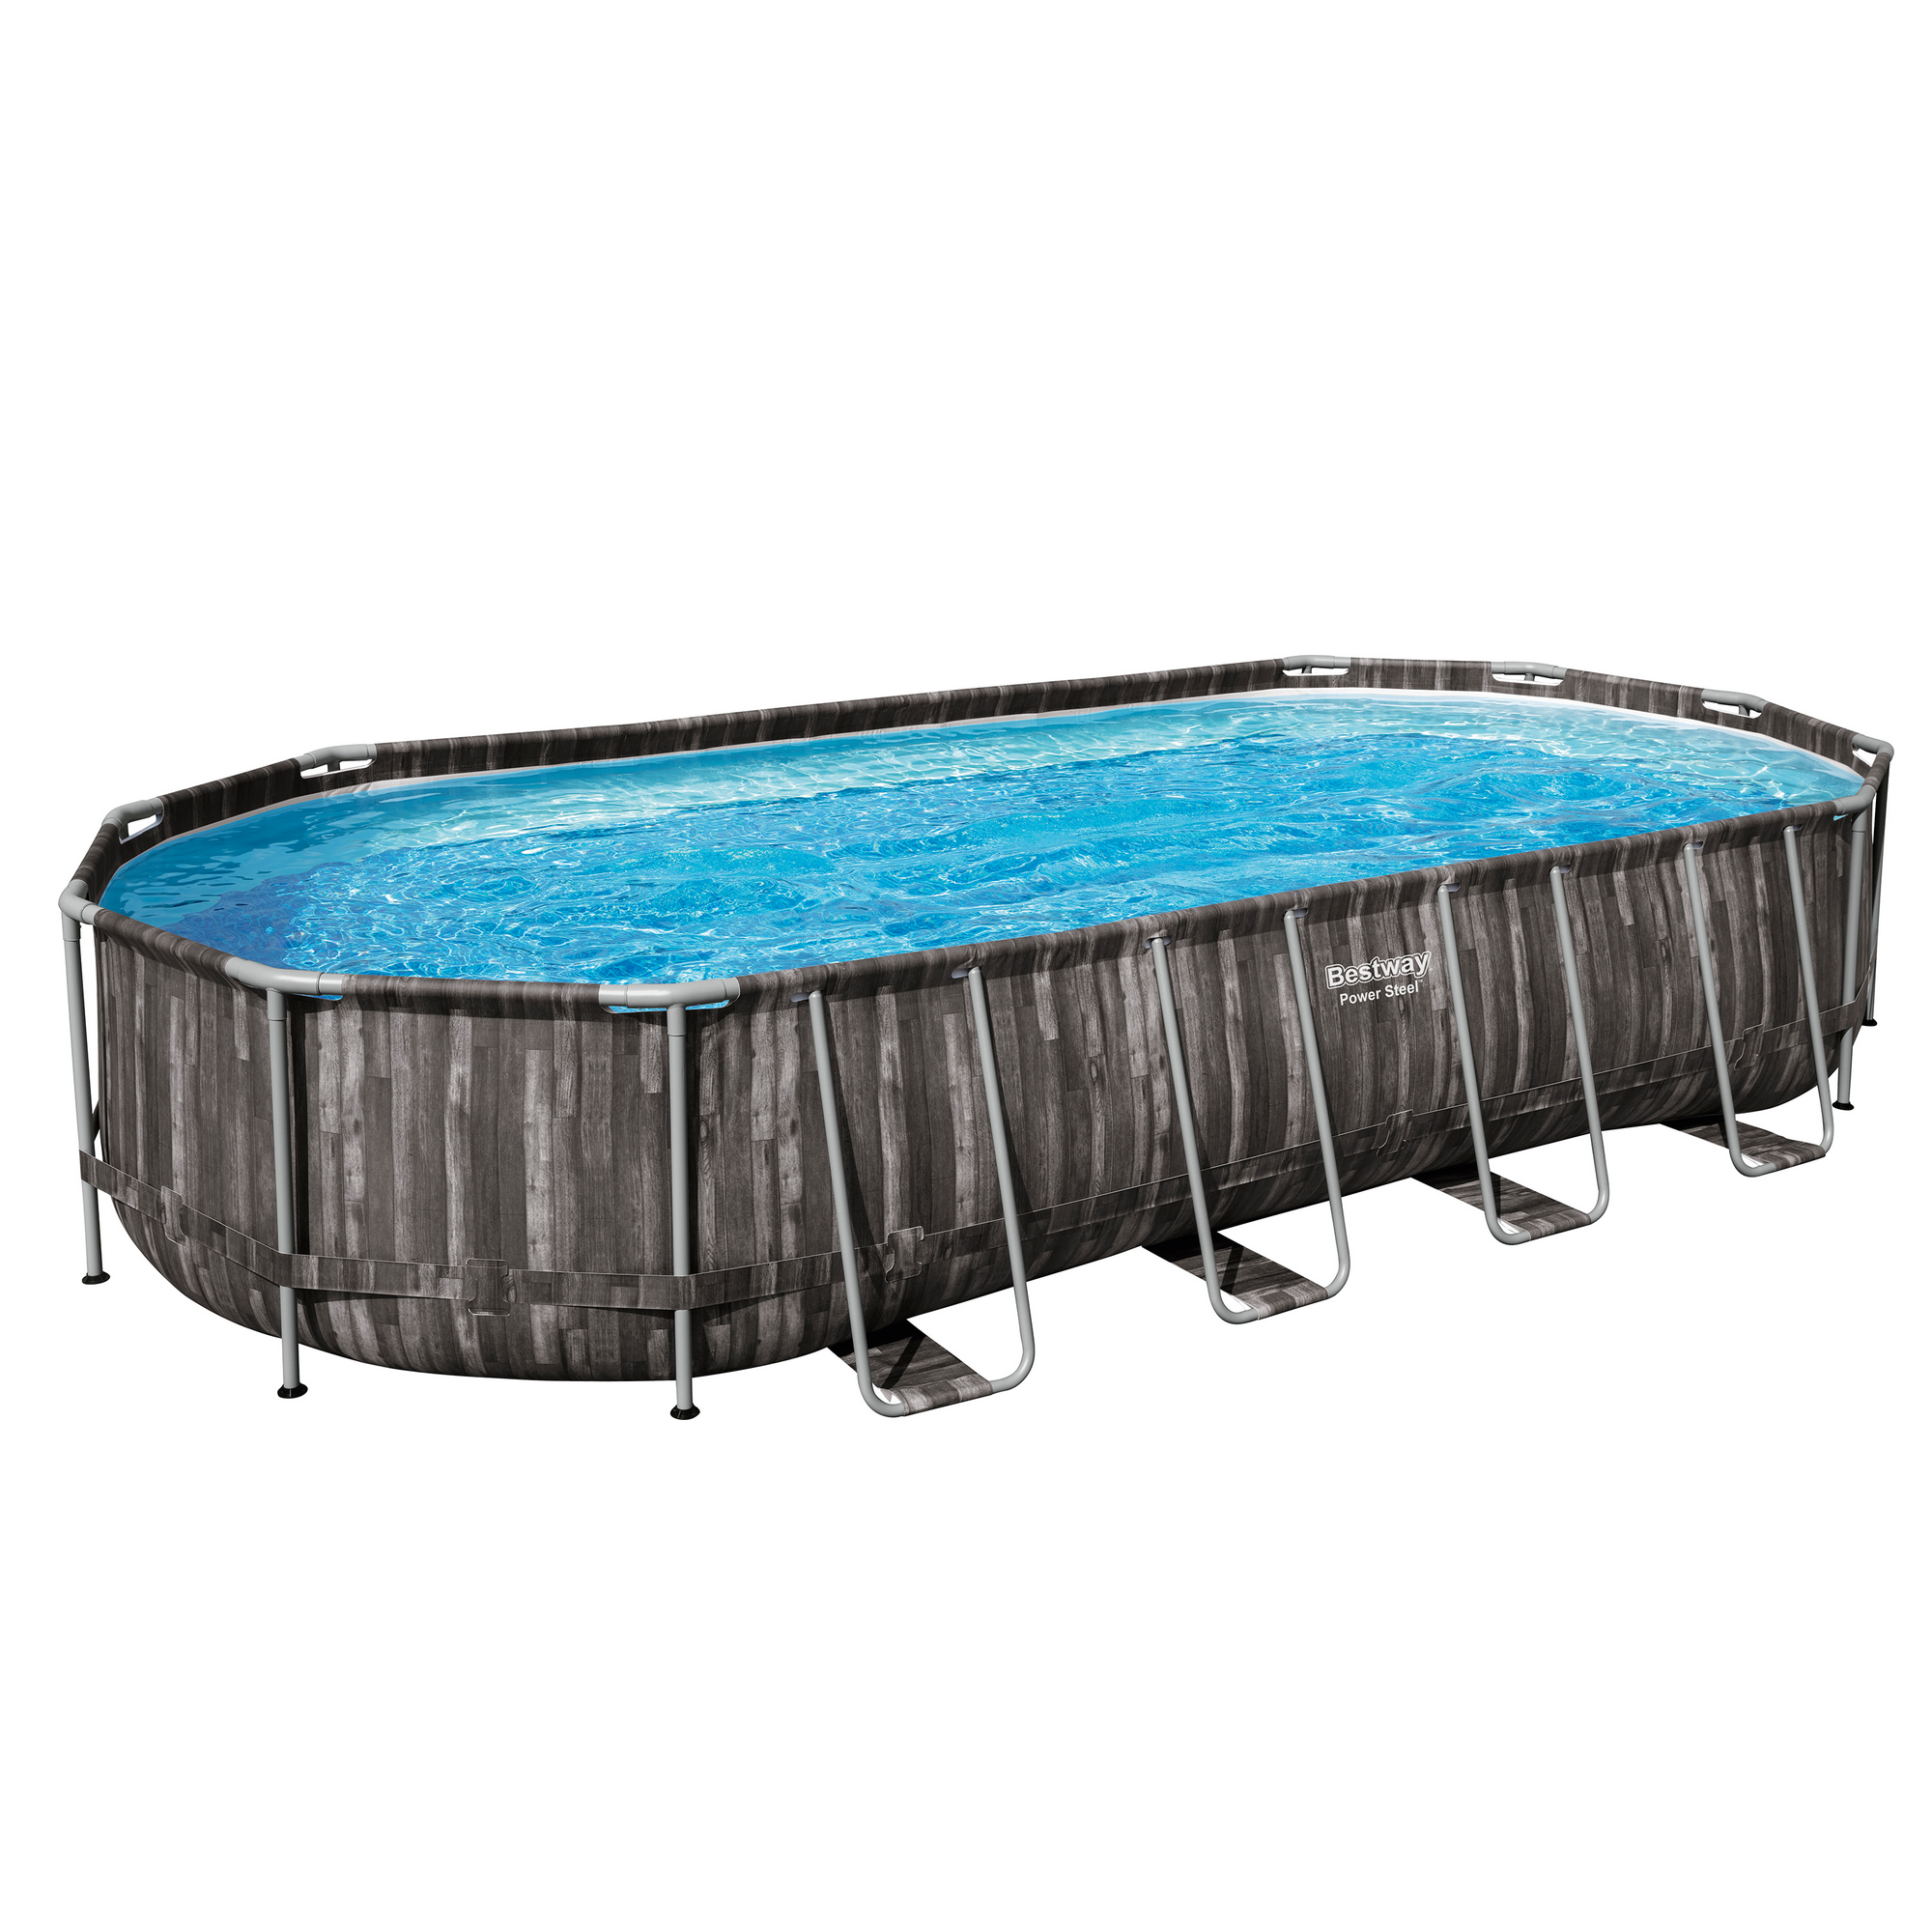 Frame-Pool-Set 'Power Steel' 732 x 366 x 122 cm mit Sicherheitsleiter und Kartuschenfilter + product picture